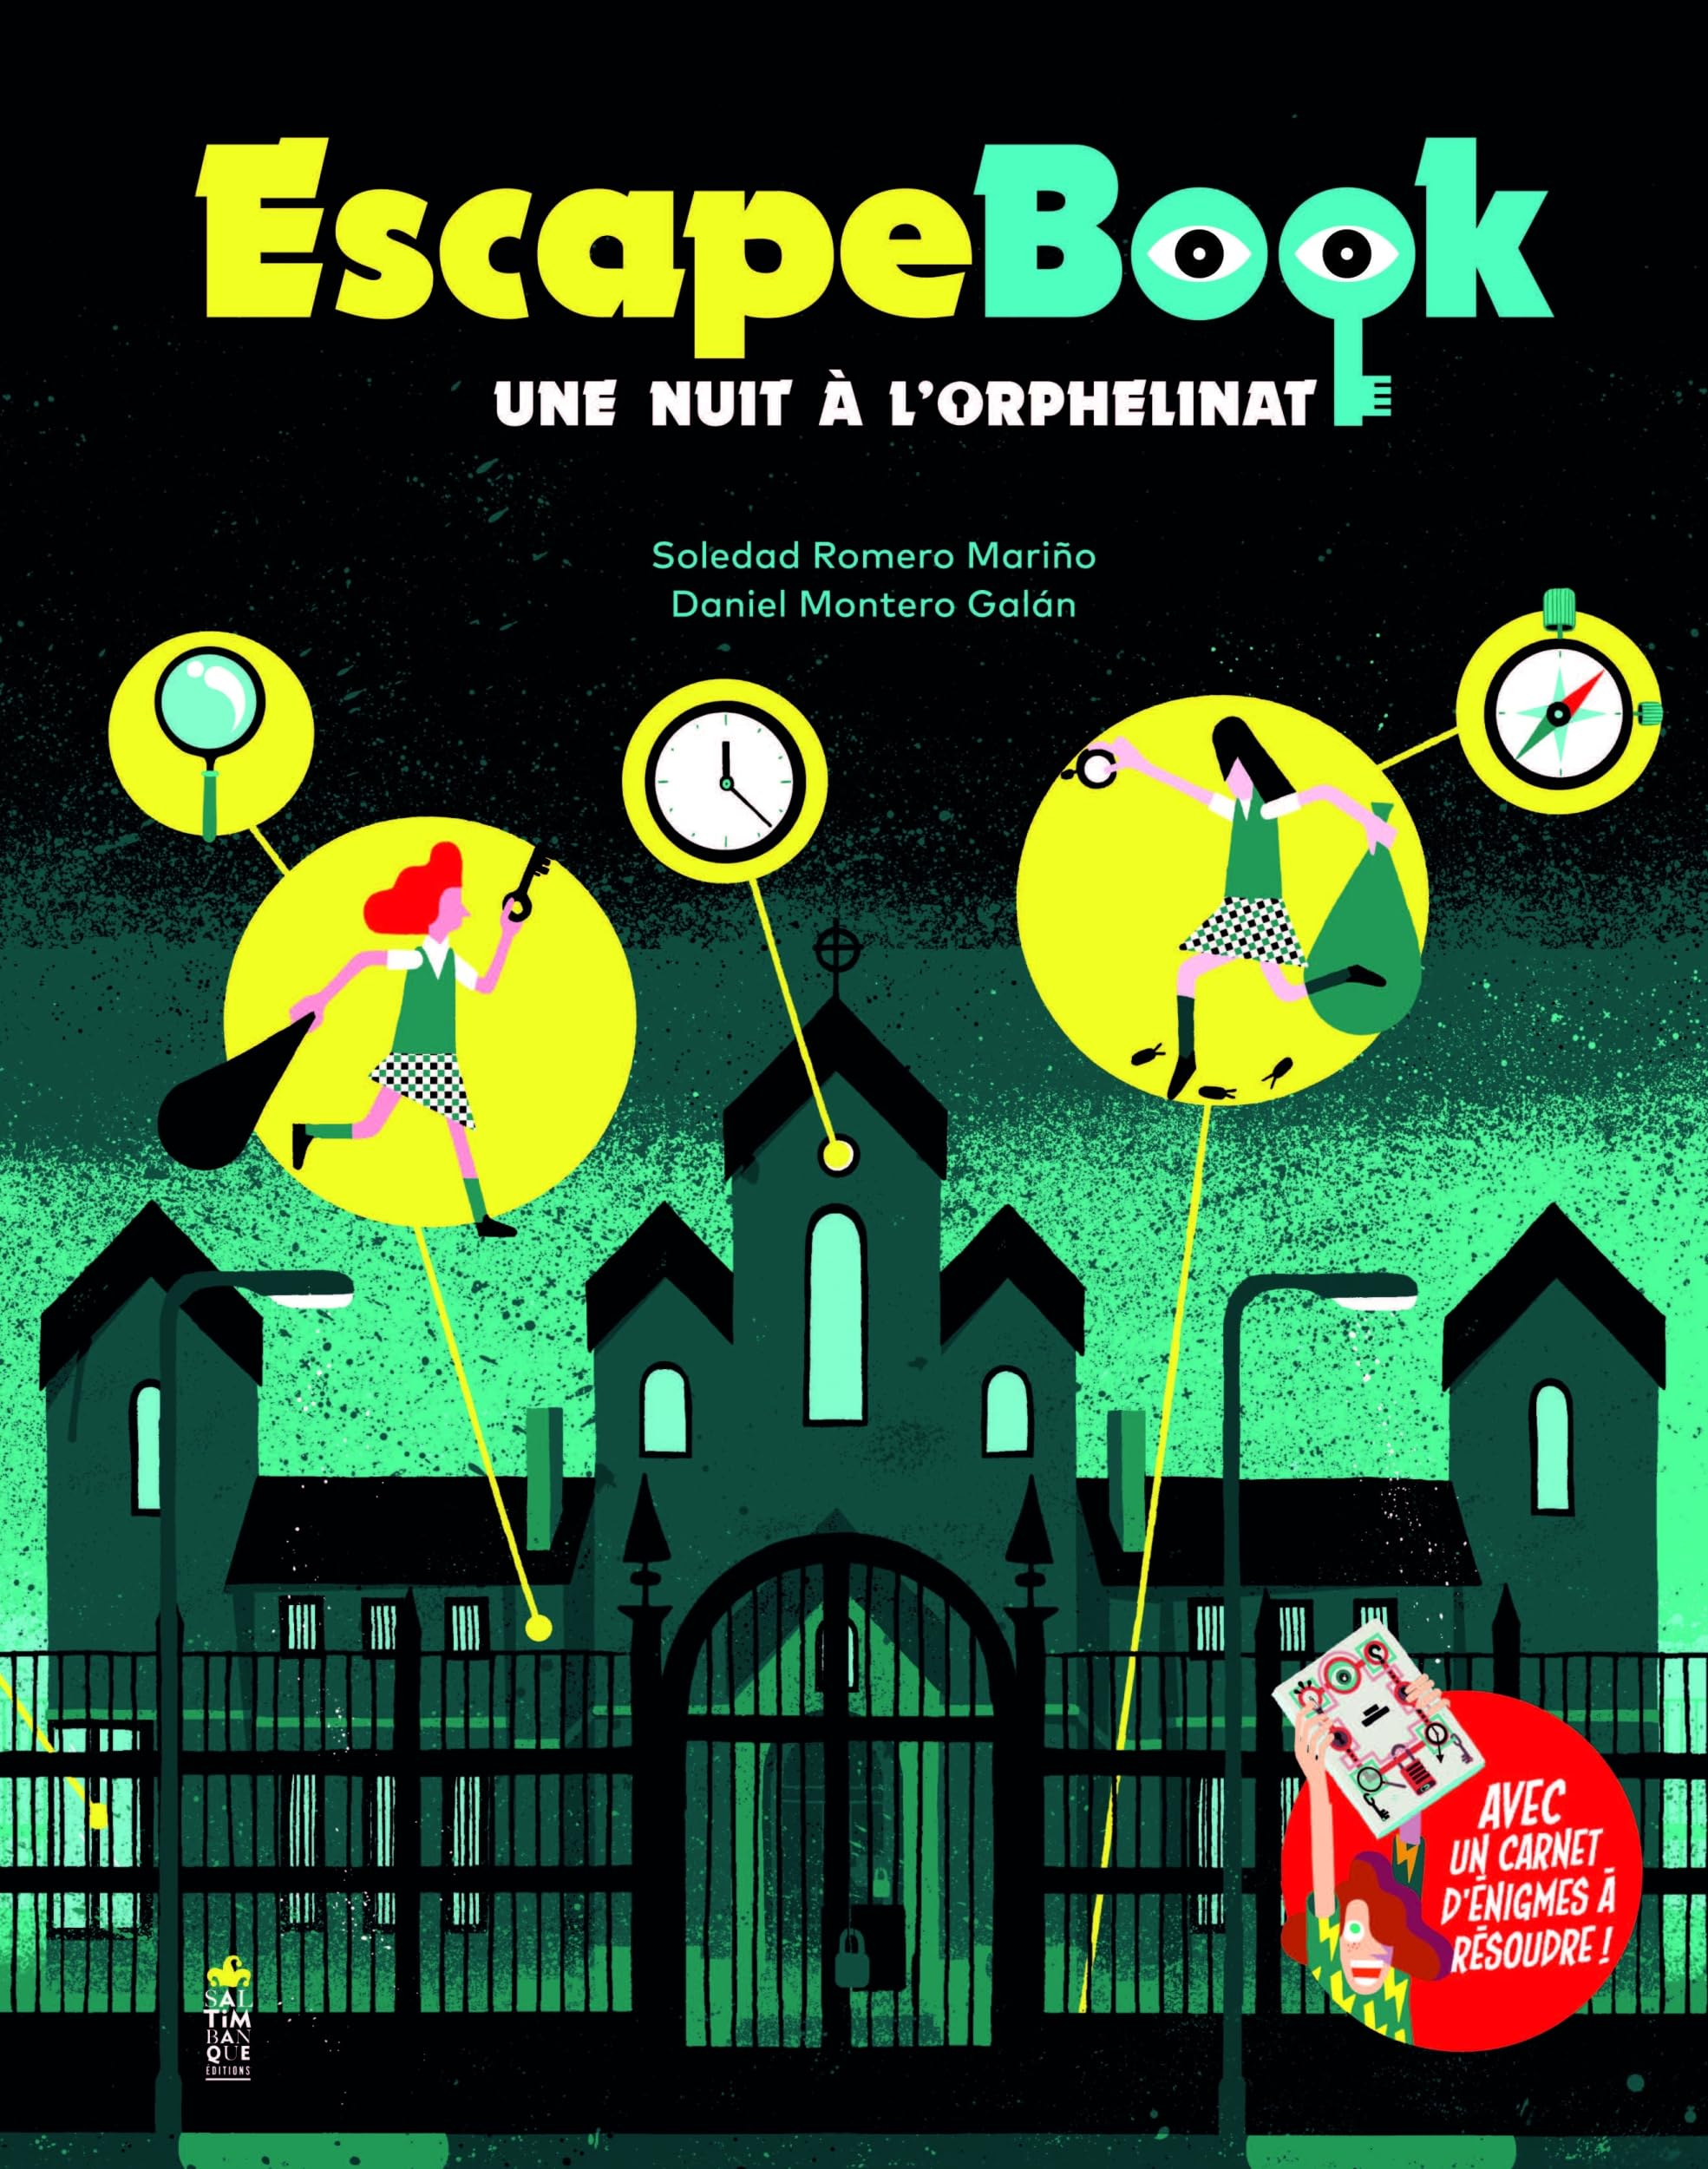 Une nuit à l'orphelinat : escape book